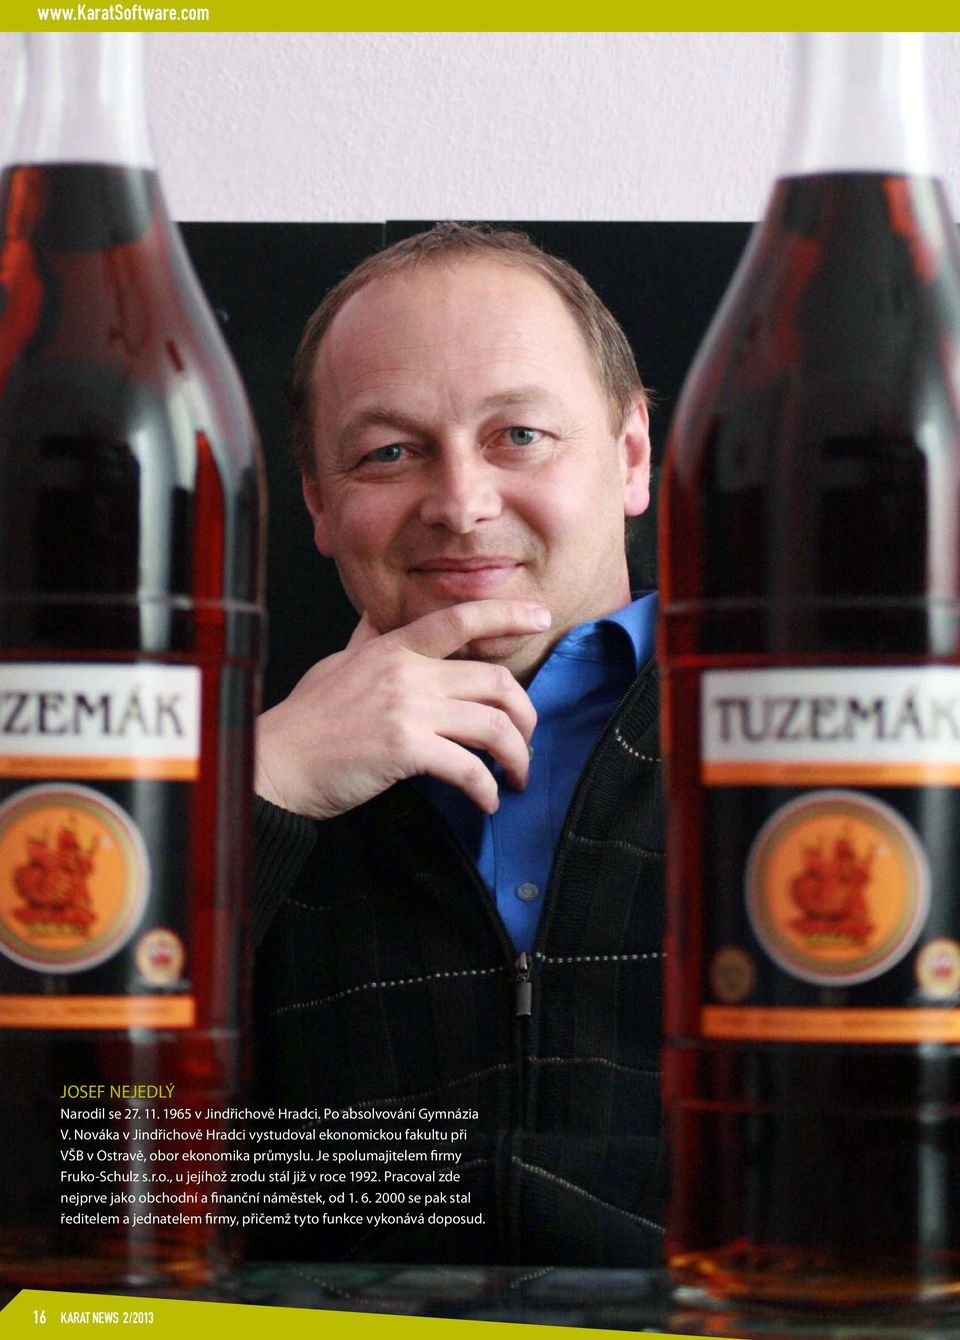 Je spolumajitelem firmy Fruko-Schulz s.r.o., u jejíhož zrodu stál již v roce 1992.